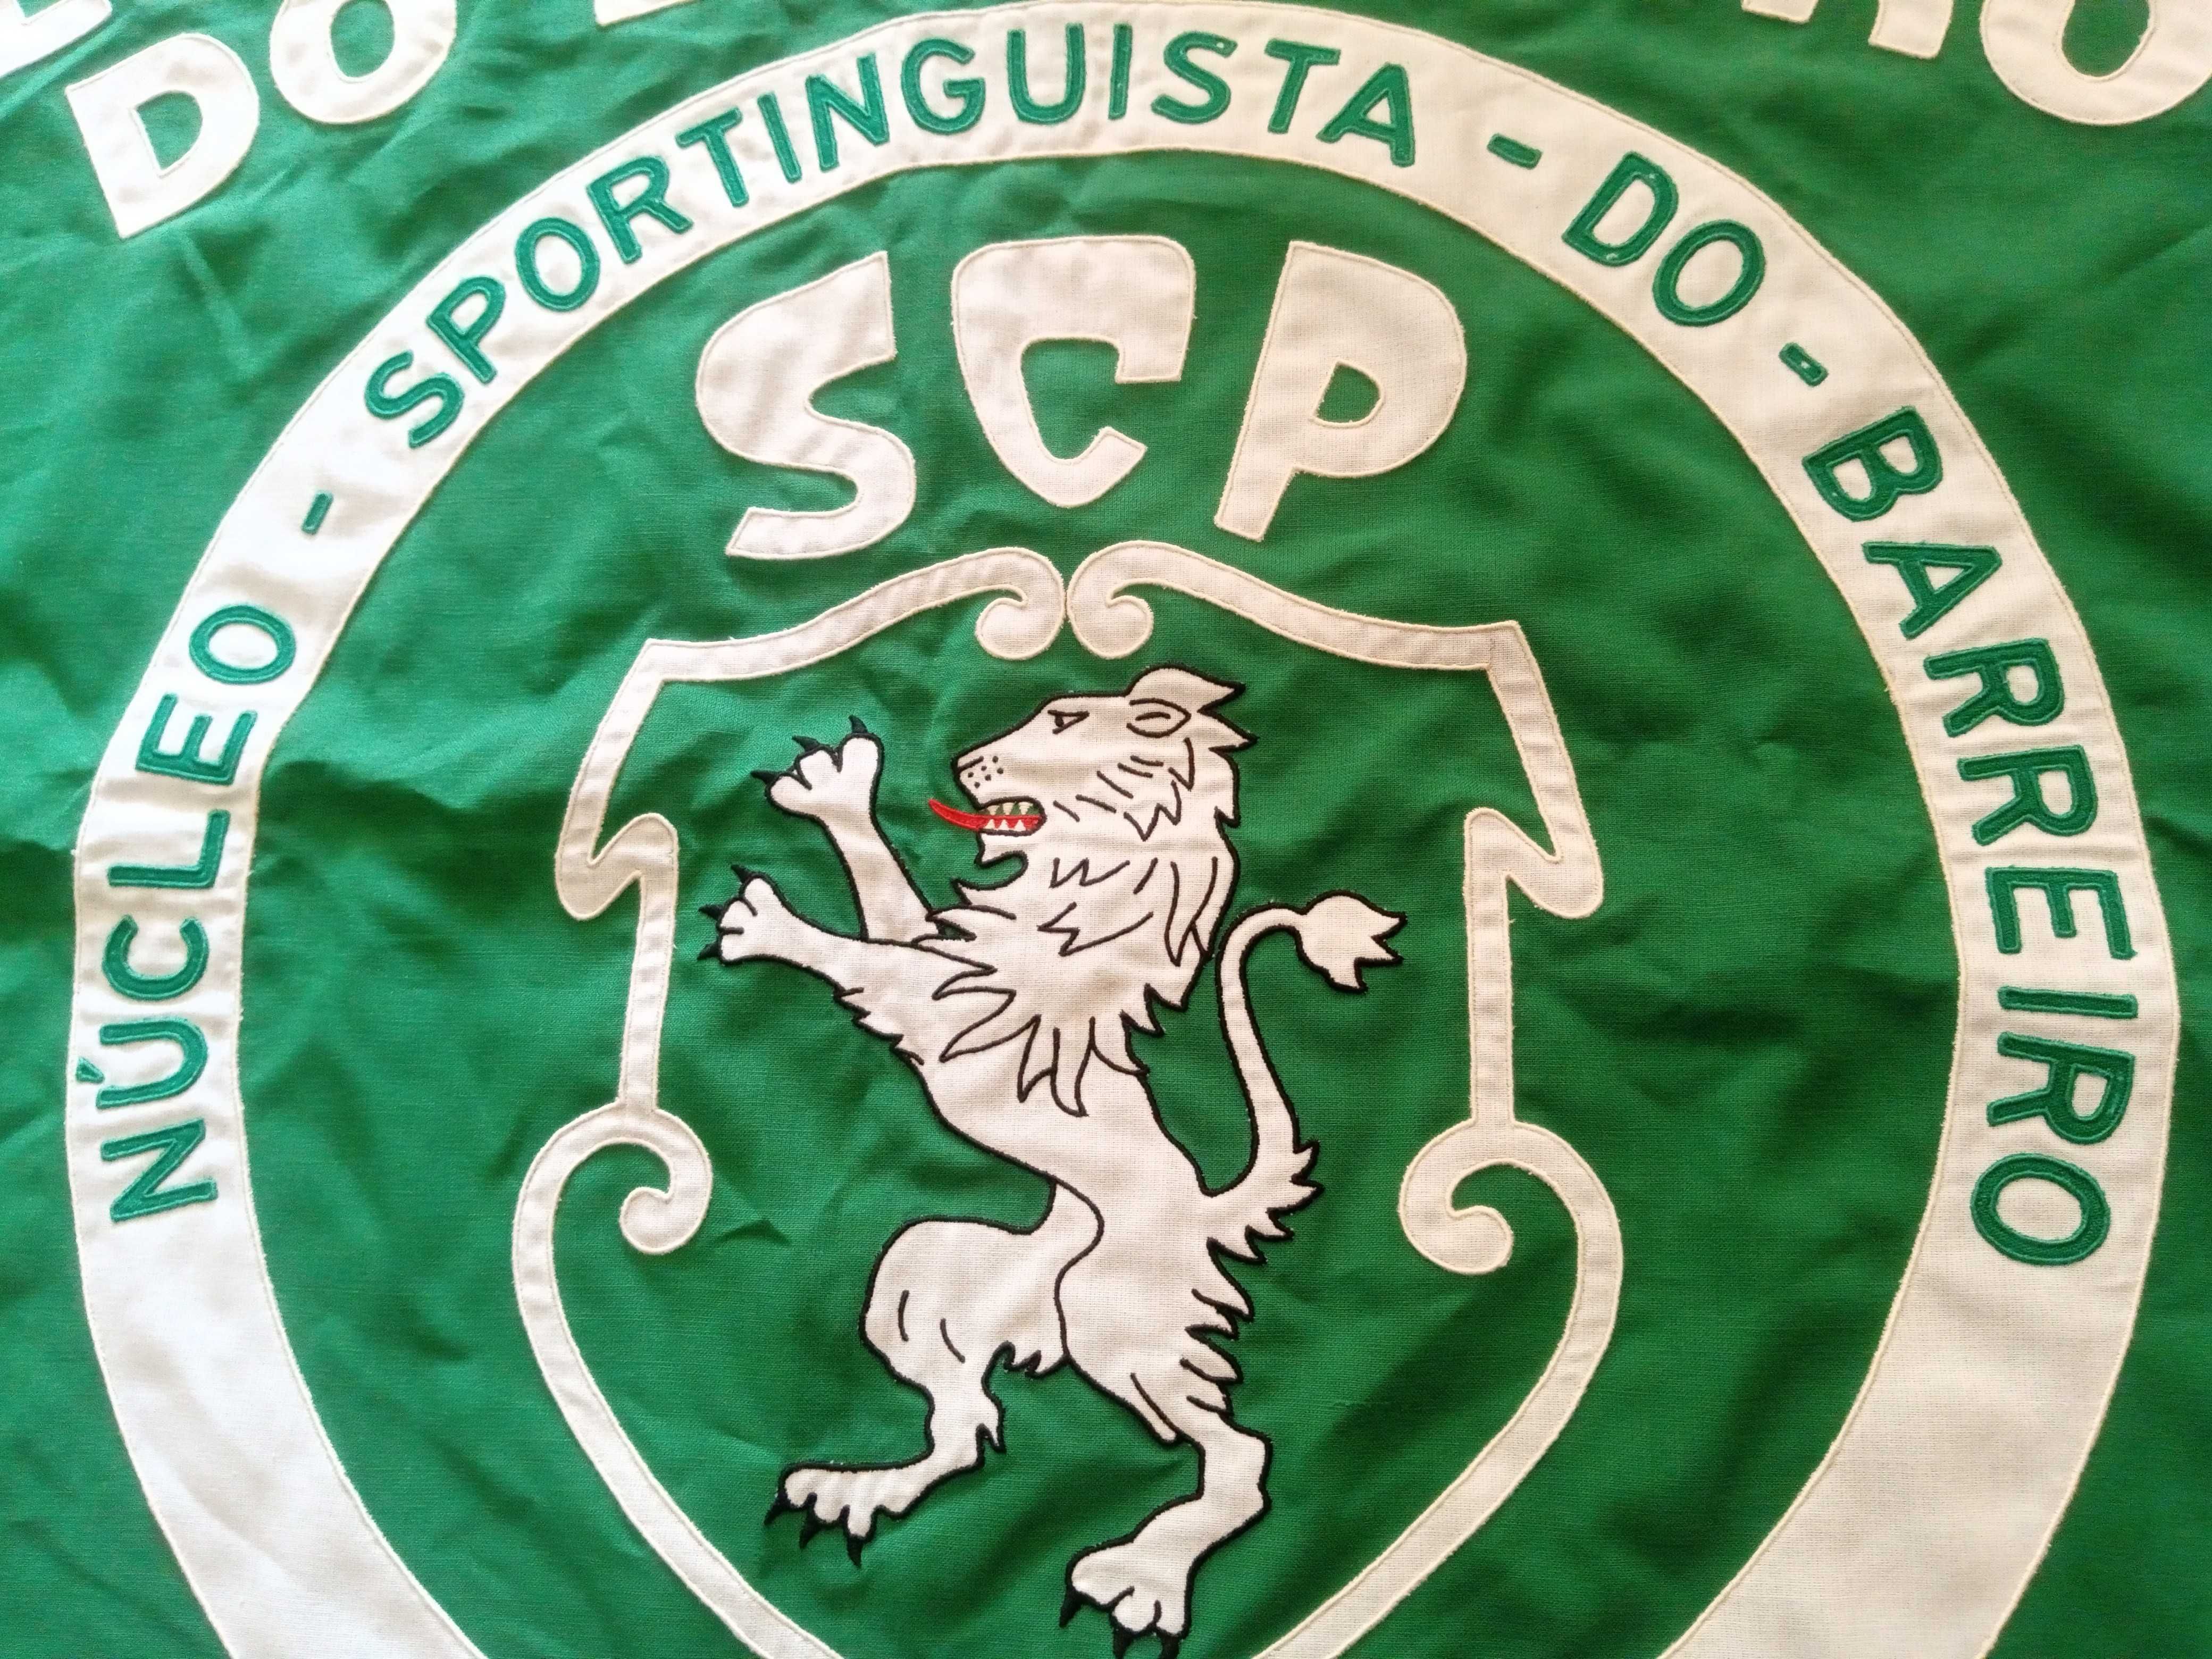 Bandeira do Sporting, antiga